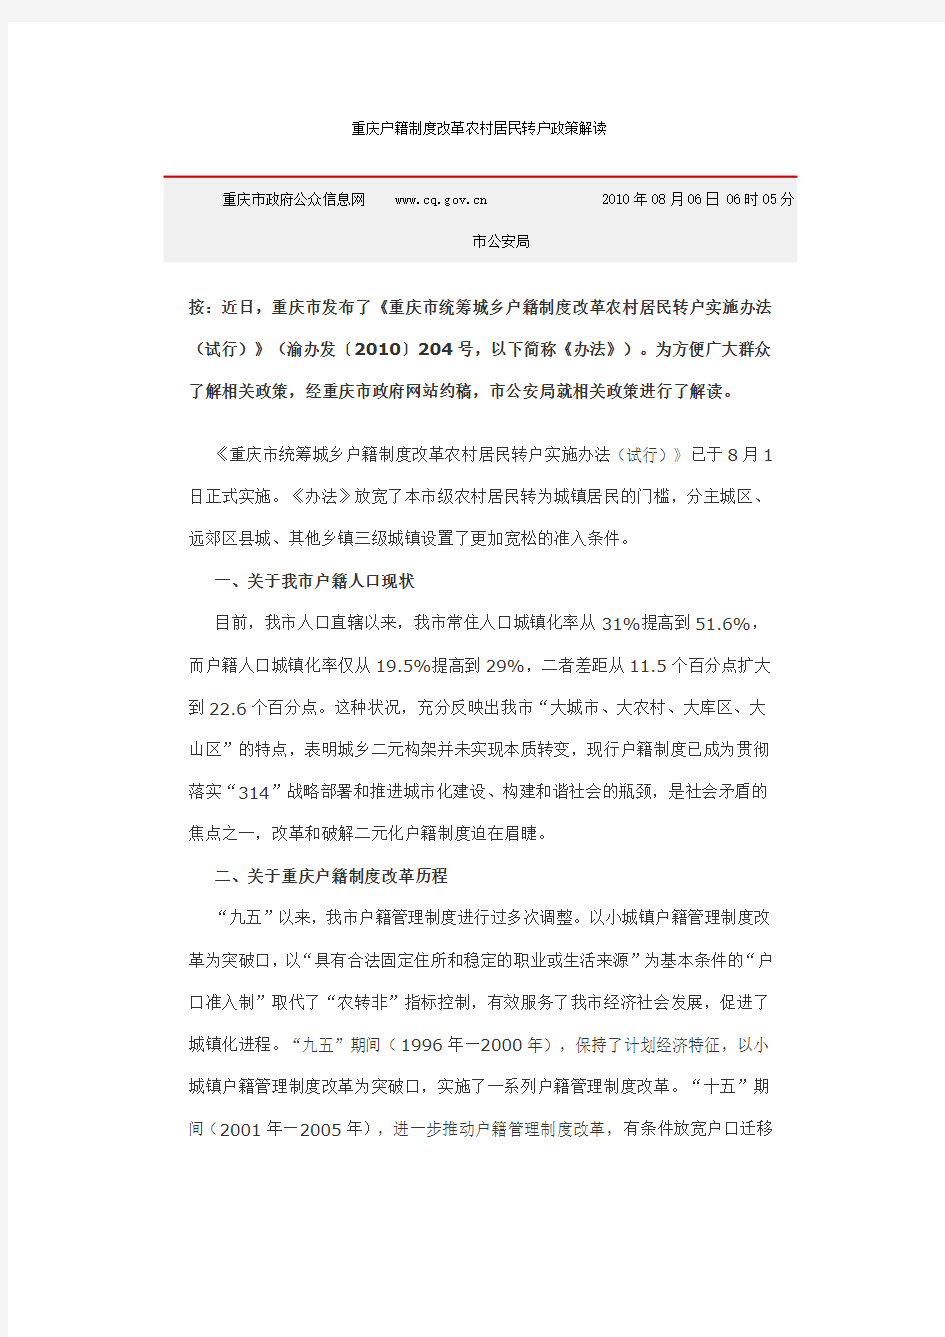 重庆市户籍制度改革转户政策解读